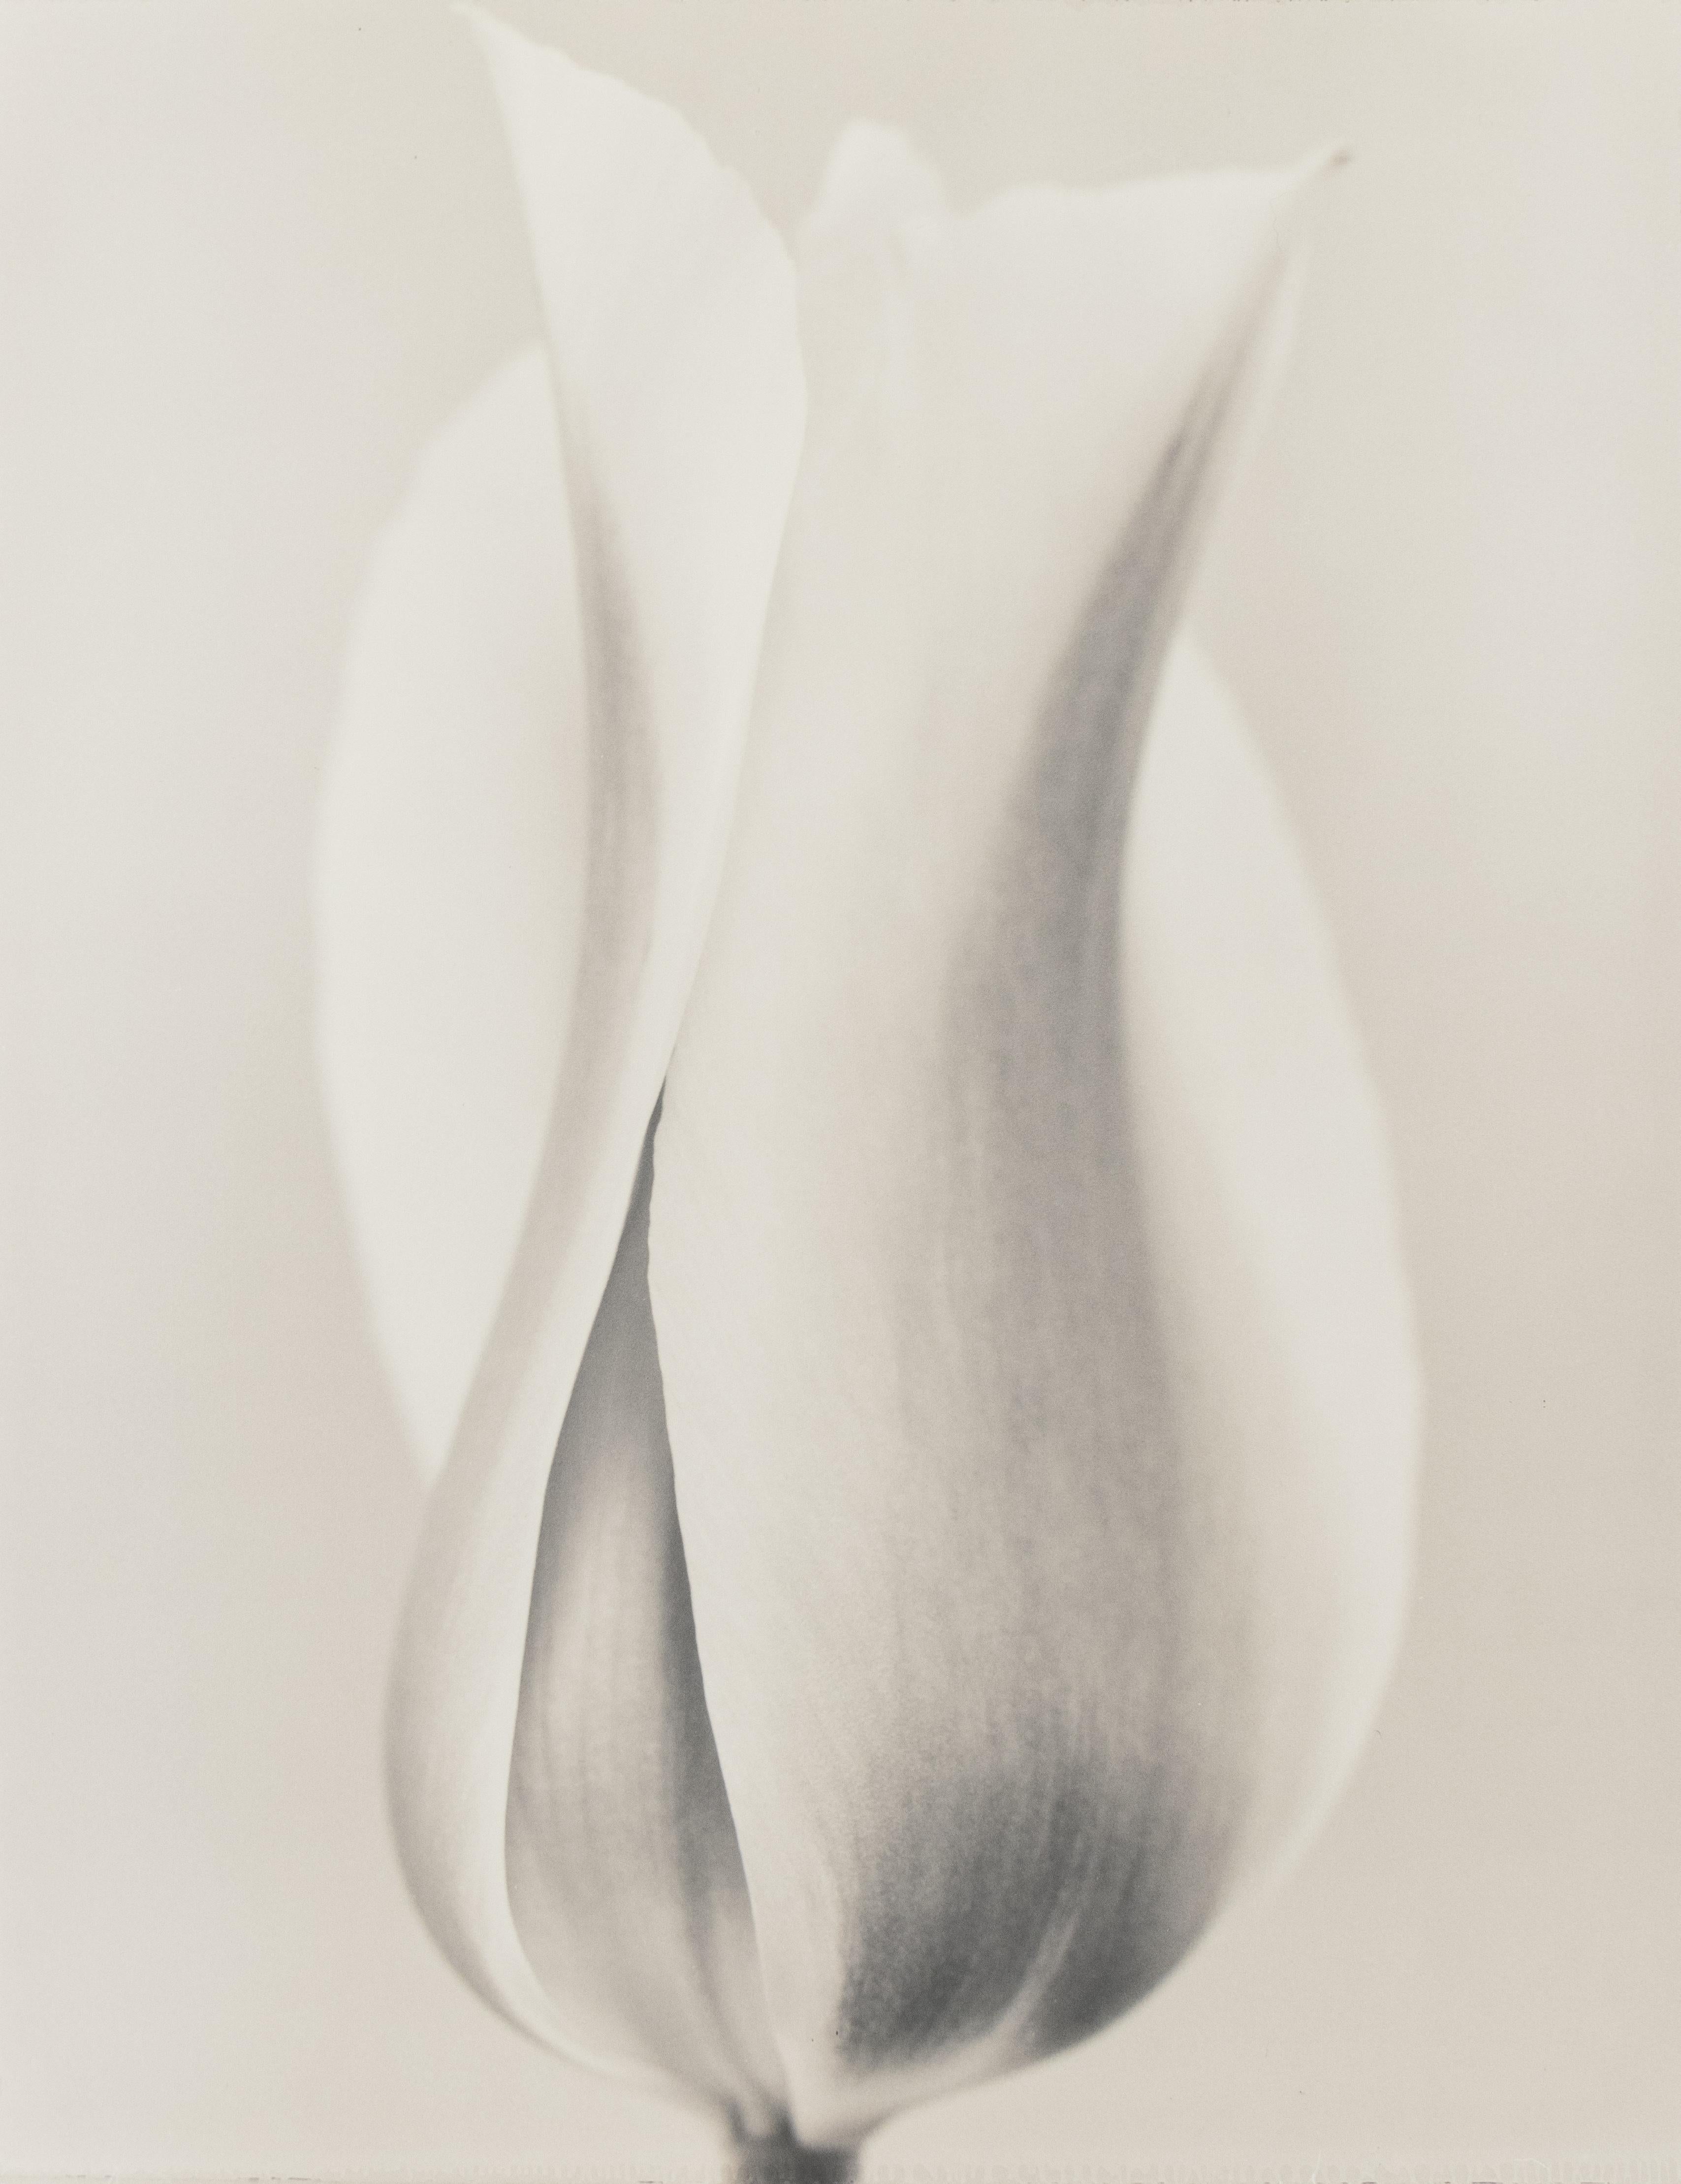 Tulipa 'Blushing Beauty' II - Photograph by Ron van Dongen